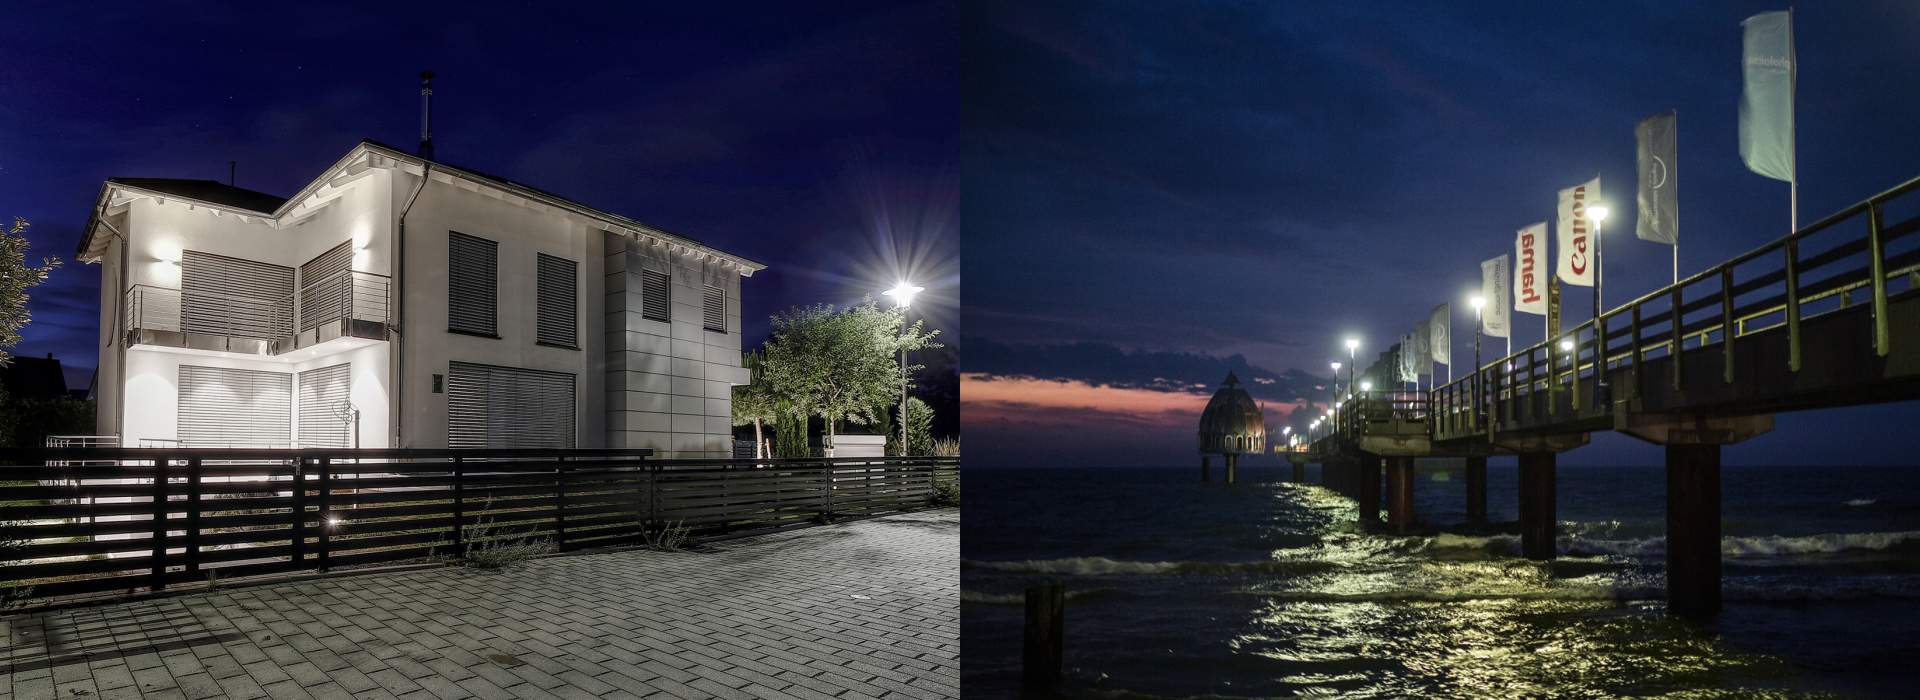 Architektur Fotografie in der Nacht